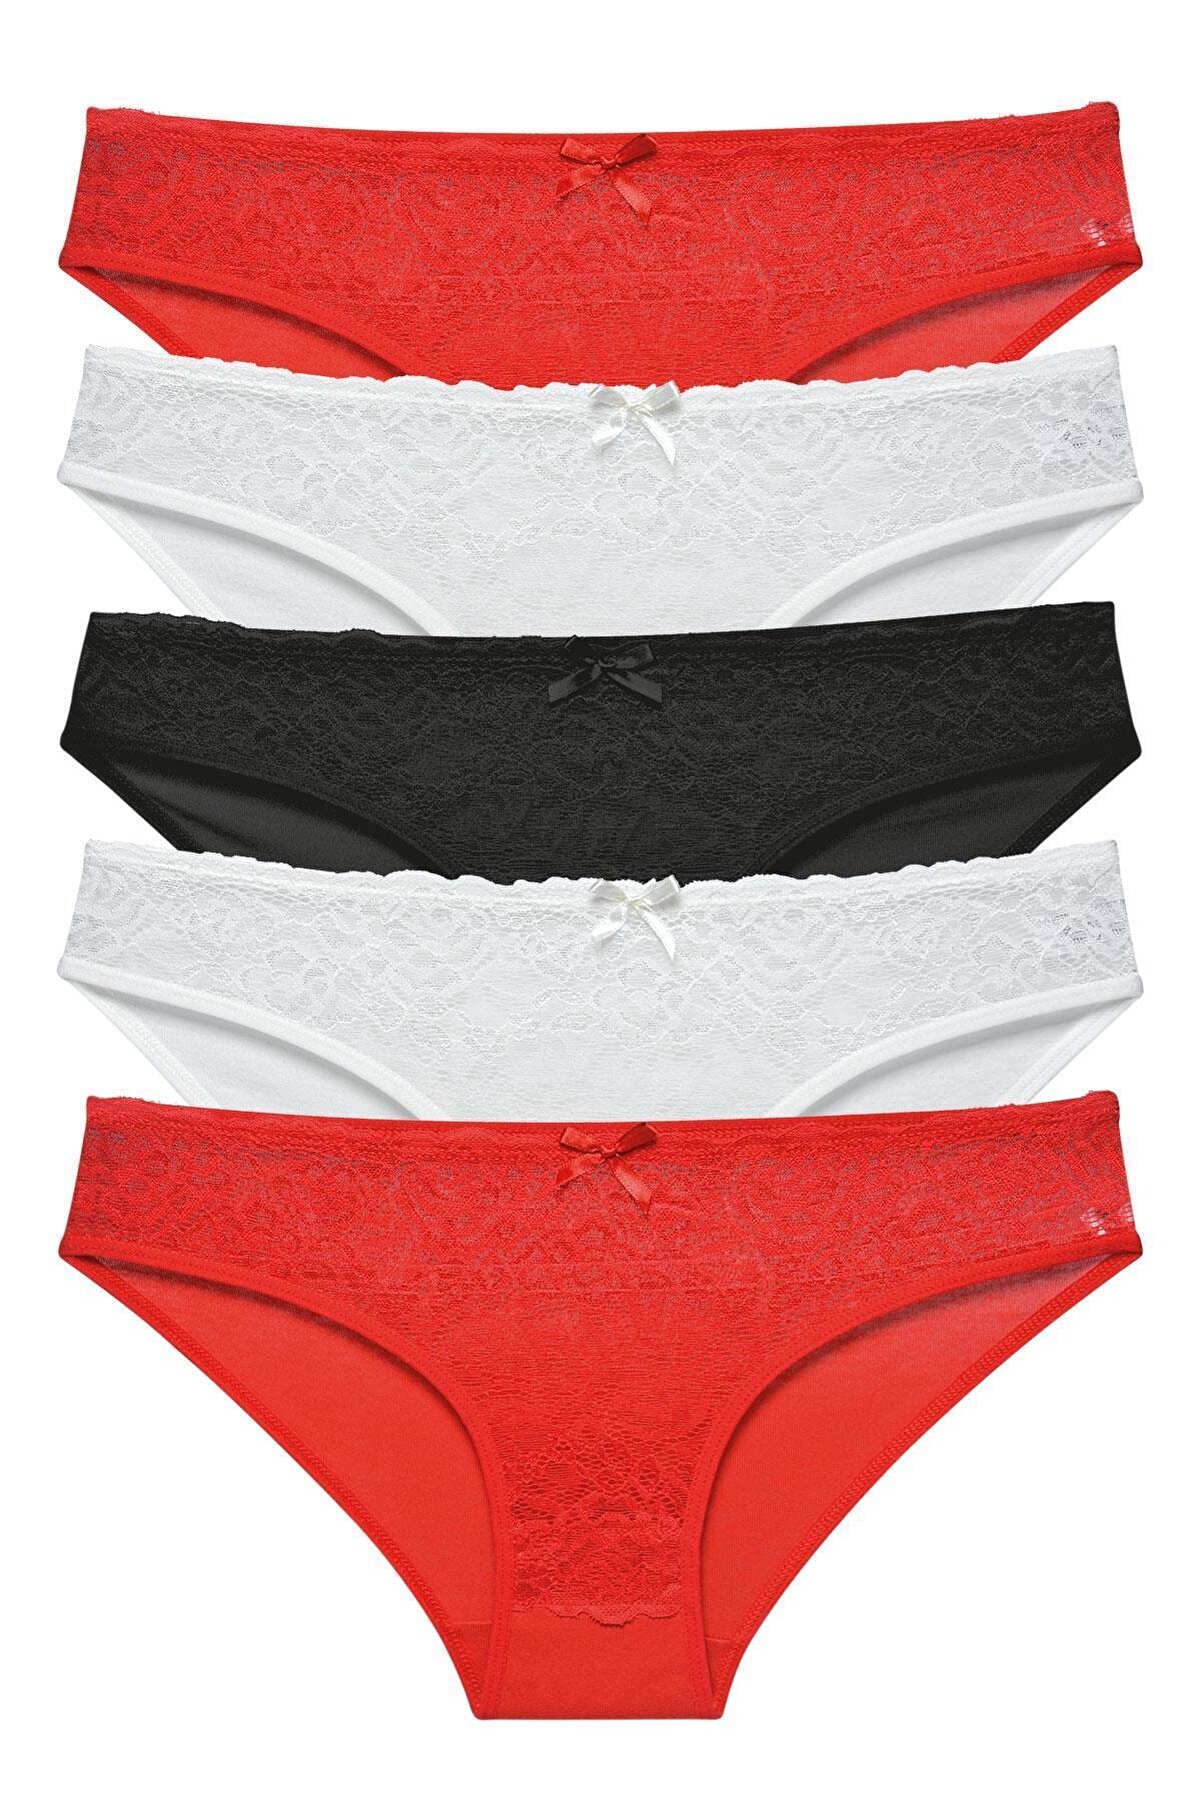 LadyMelex Kadın Kırmızı Ekru Siyah Önü Dantelli Bikini Külot 5'li Paket